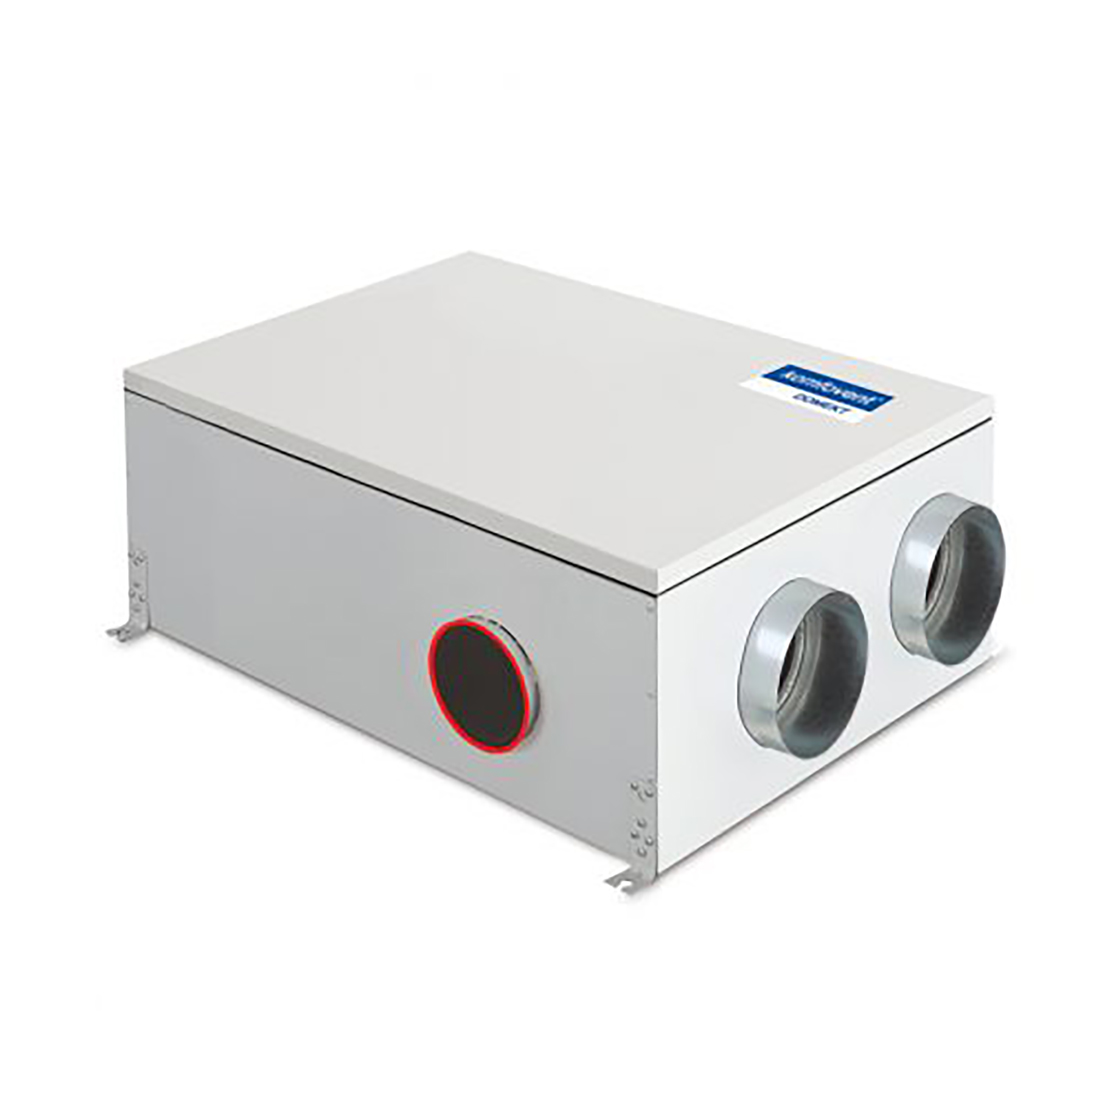 Komfovent Domekt R-250-F Heat Recovery System - Domekt R-250-F